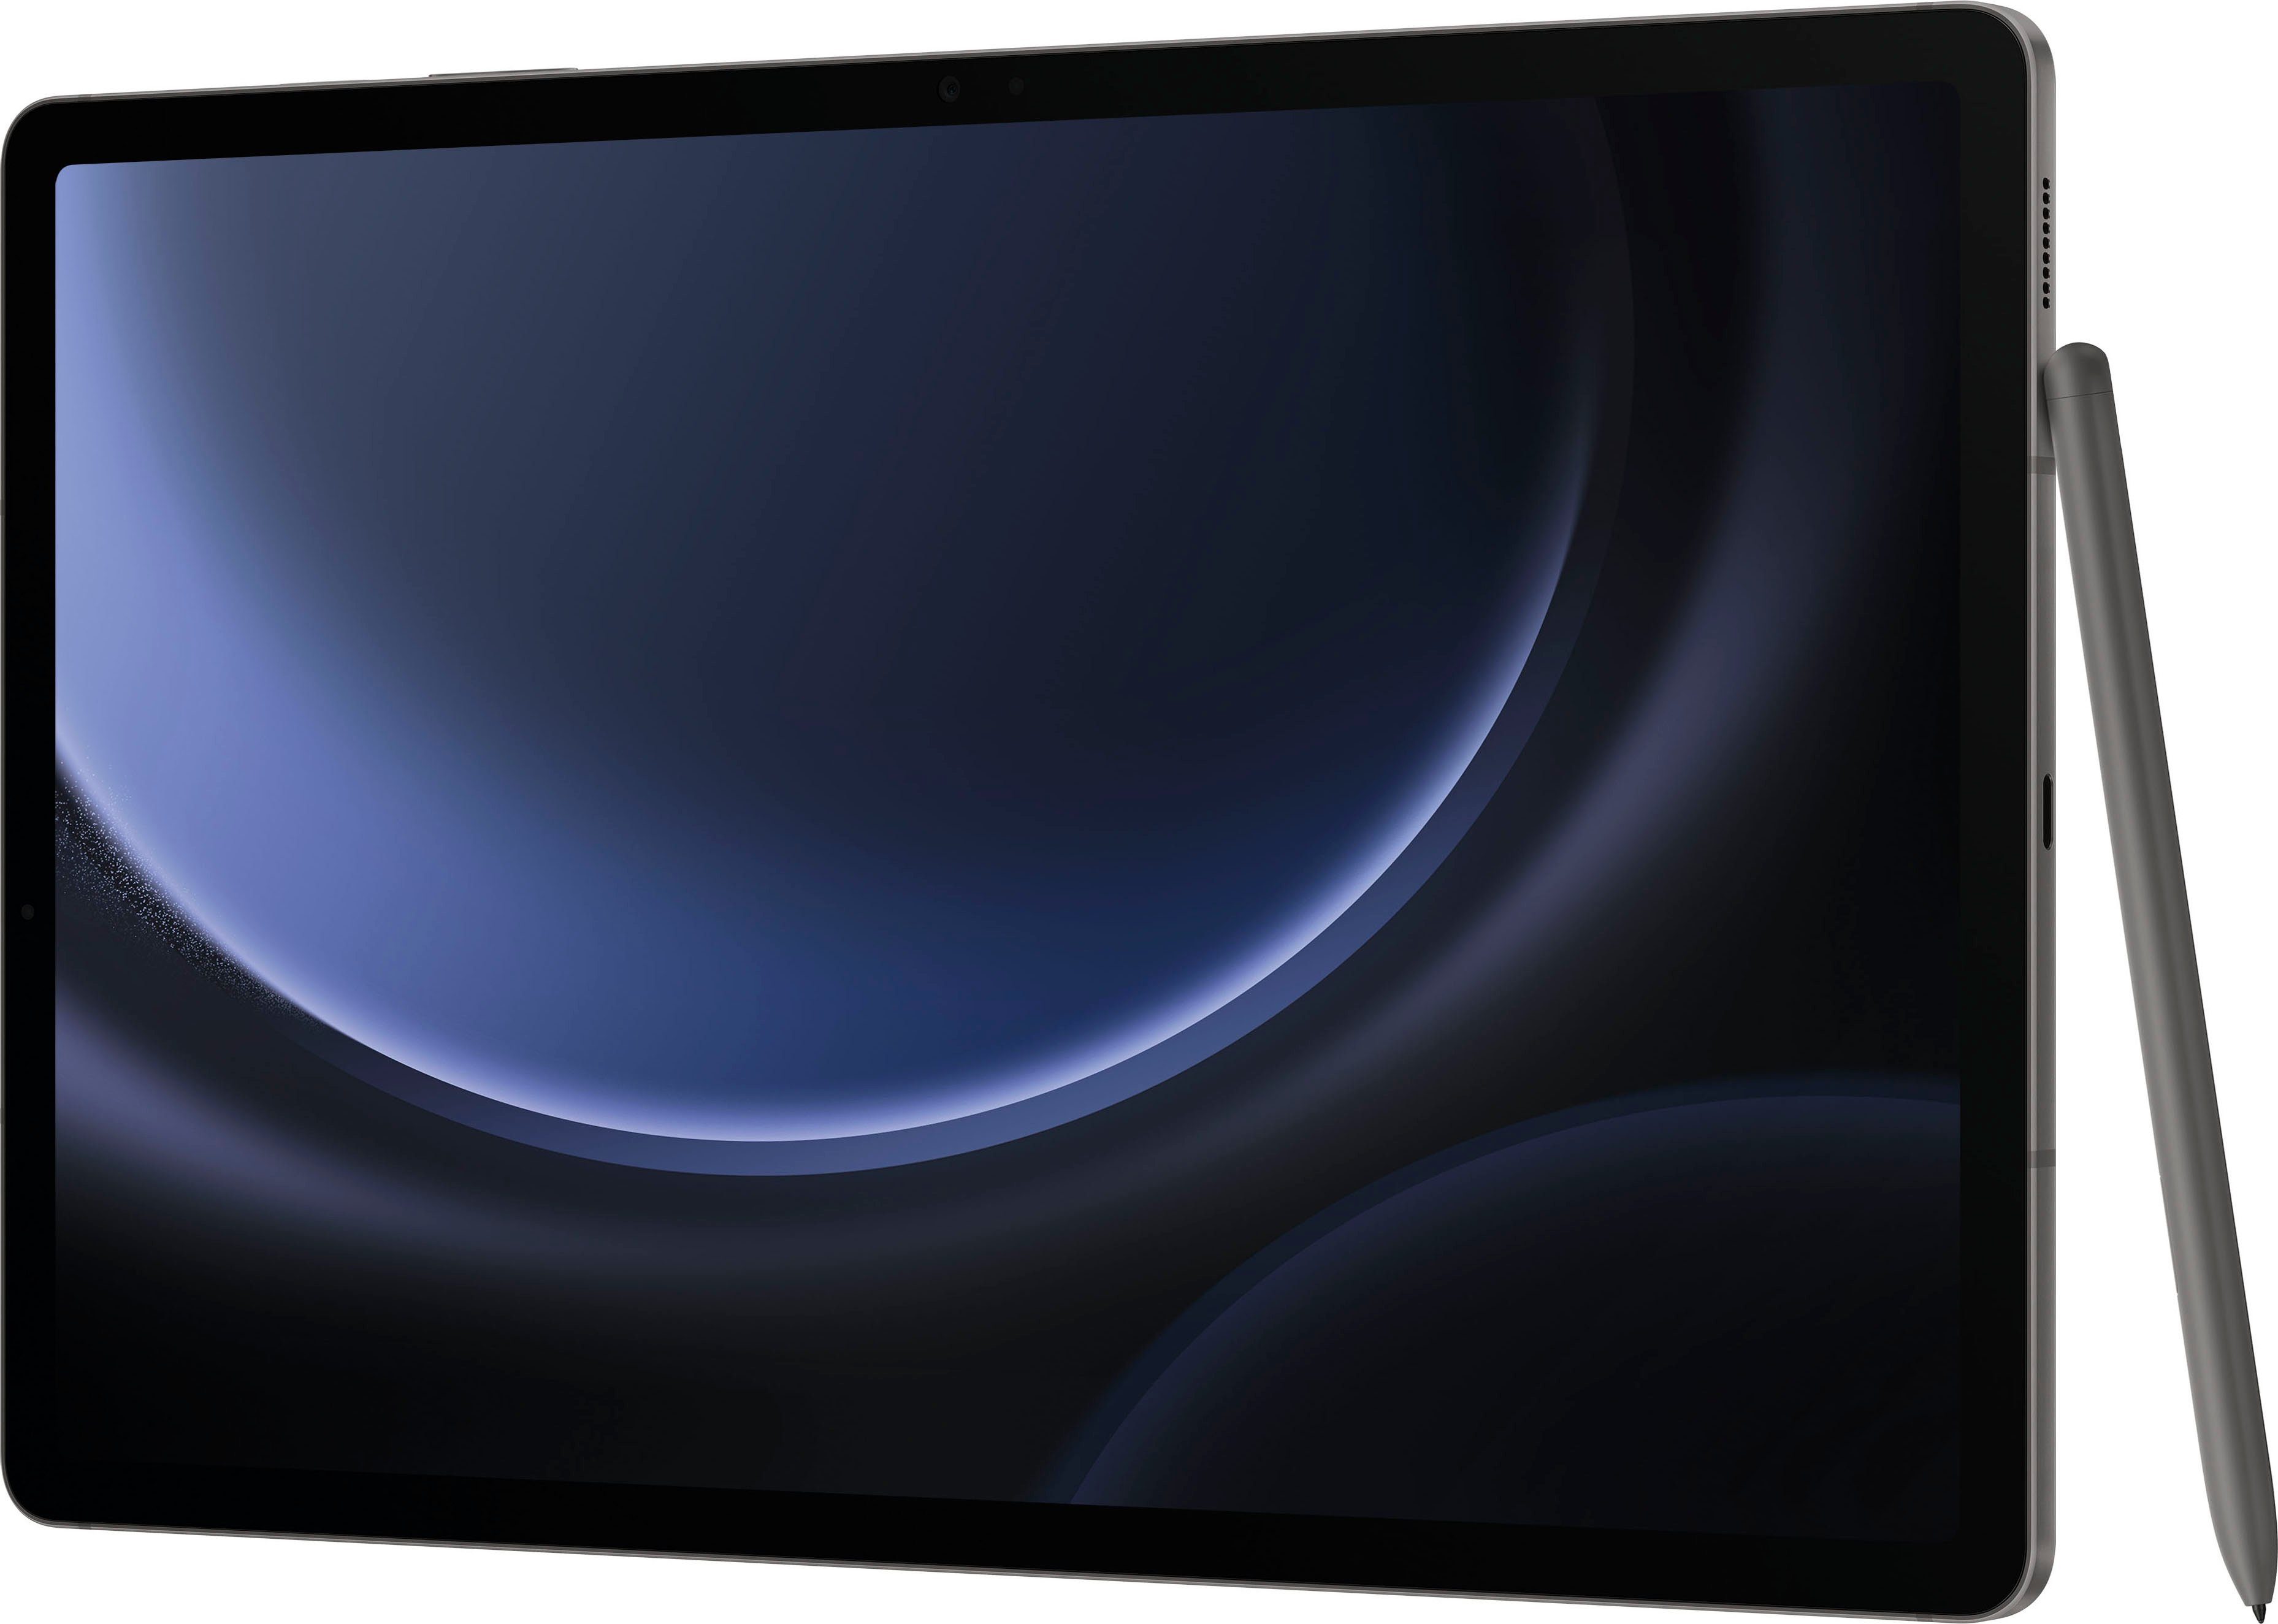 (12,4", UI,Knox, grau S9 Android,One Samsung FE+ GB, 128 5G) Tablet 5G Galaxy Tab